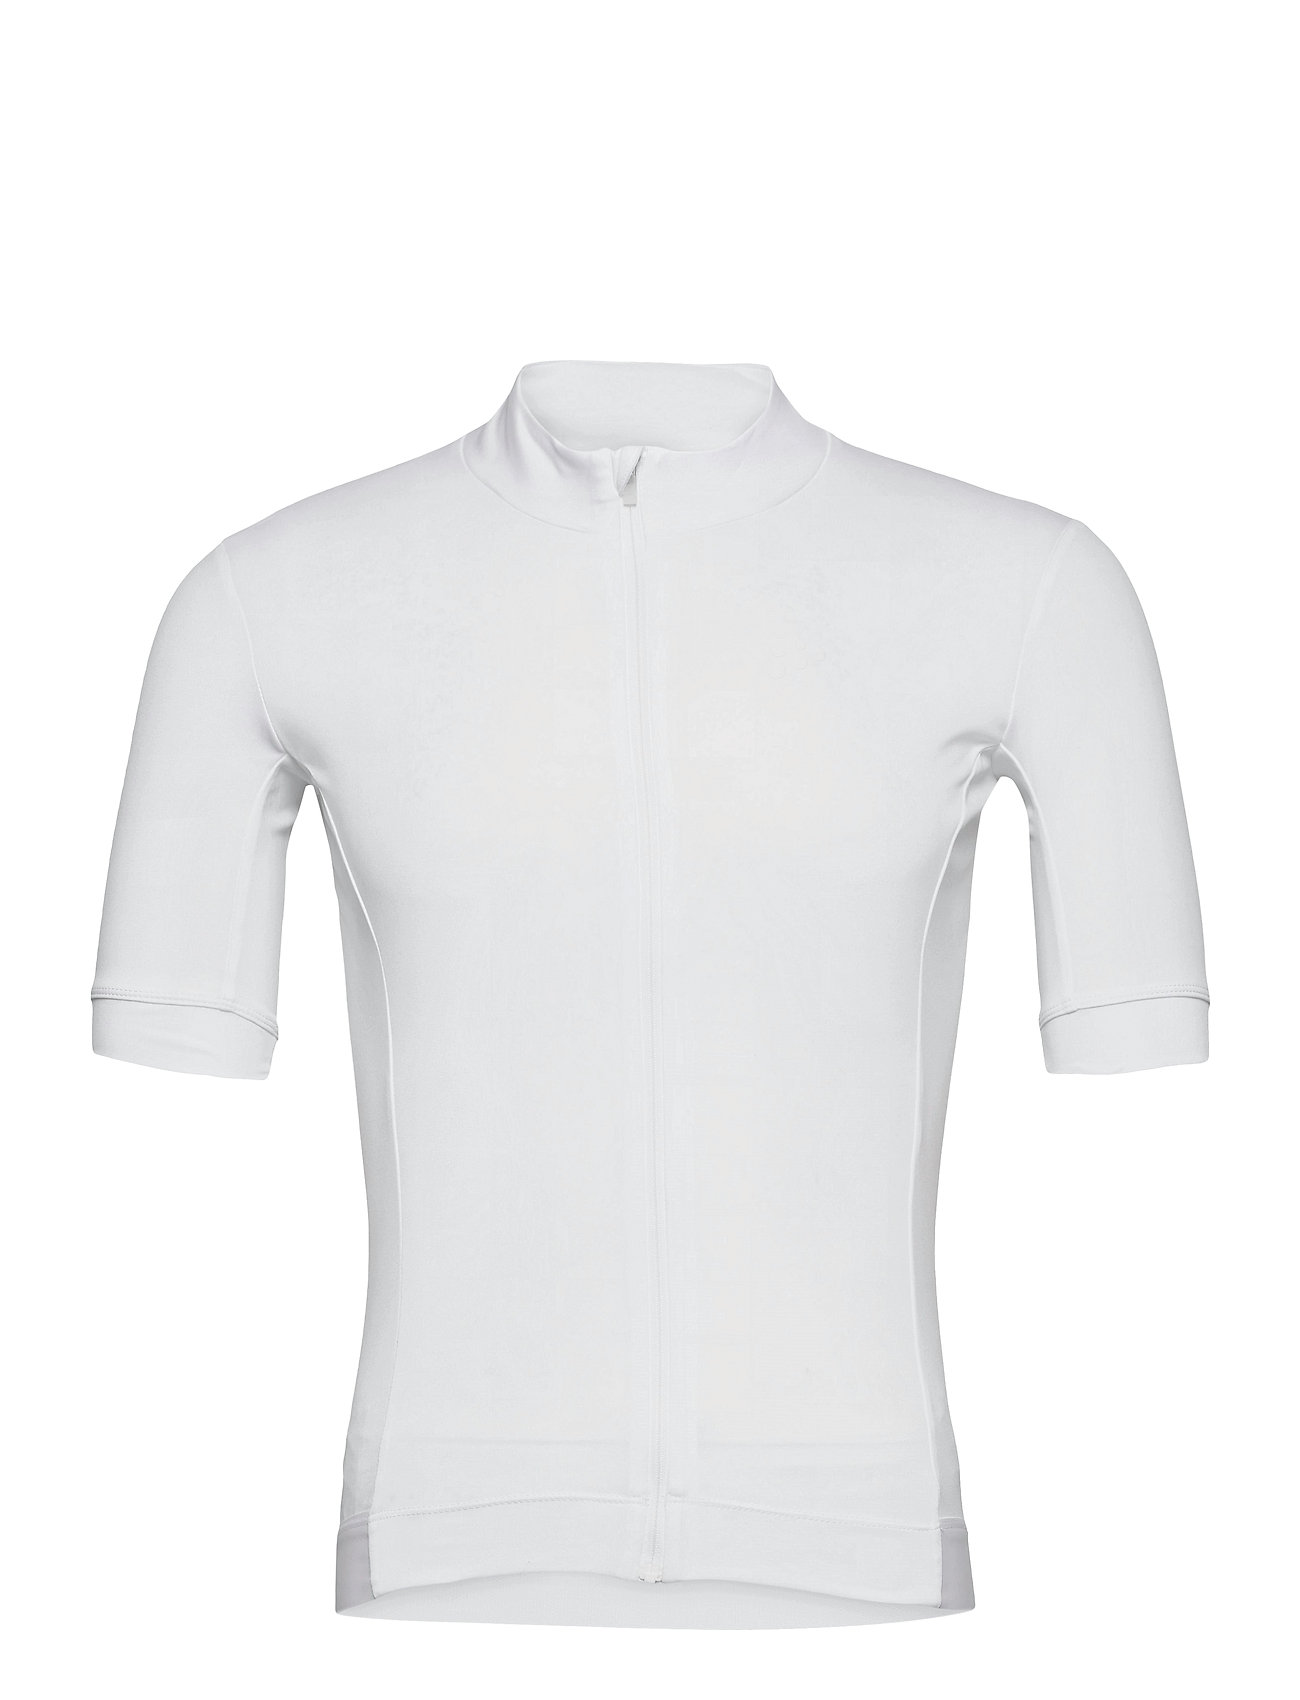 Essence Jersey T-shirts Short-sleeved Valkoinen Craft